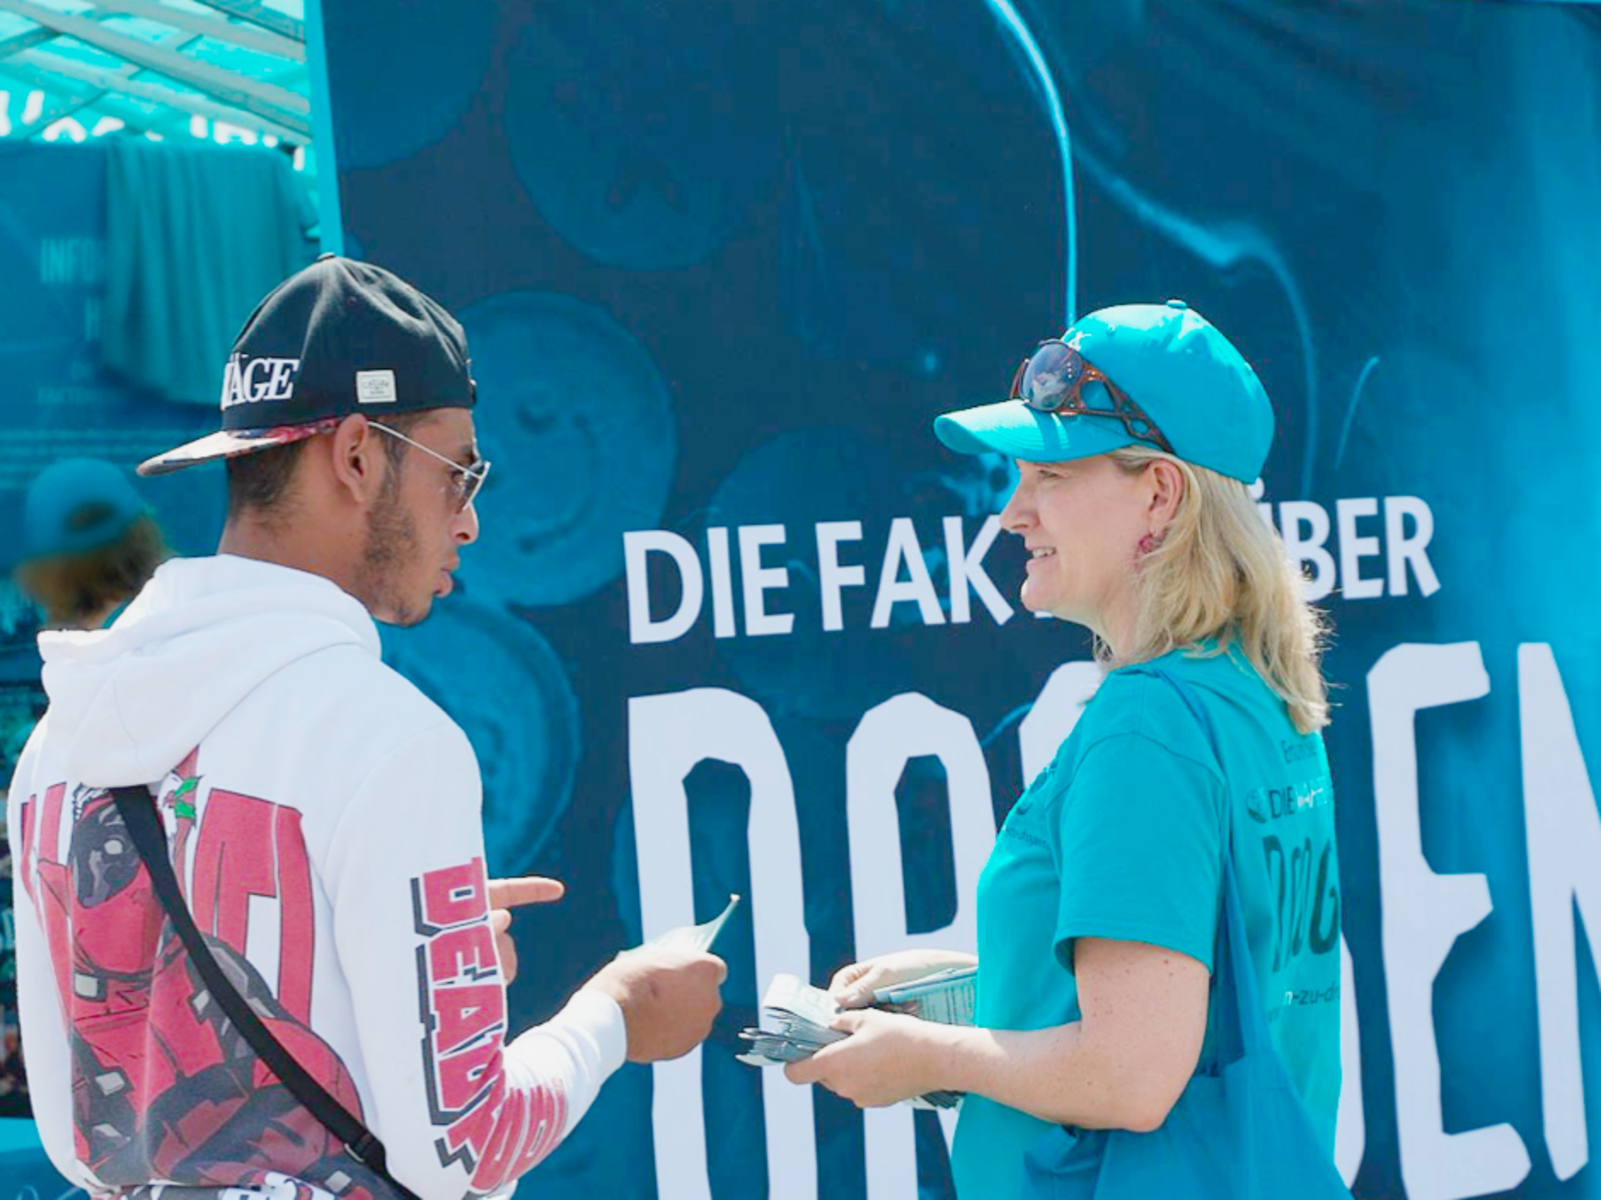 Dobrovolníci distribuovali stovky tisíc brožur Truth About Drugs na hrách mistrovství UEFA po celém Německu